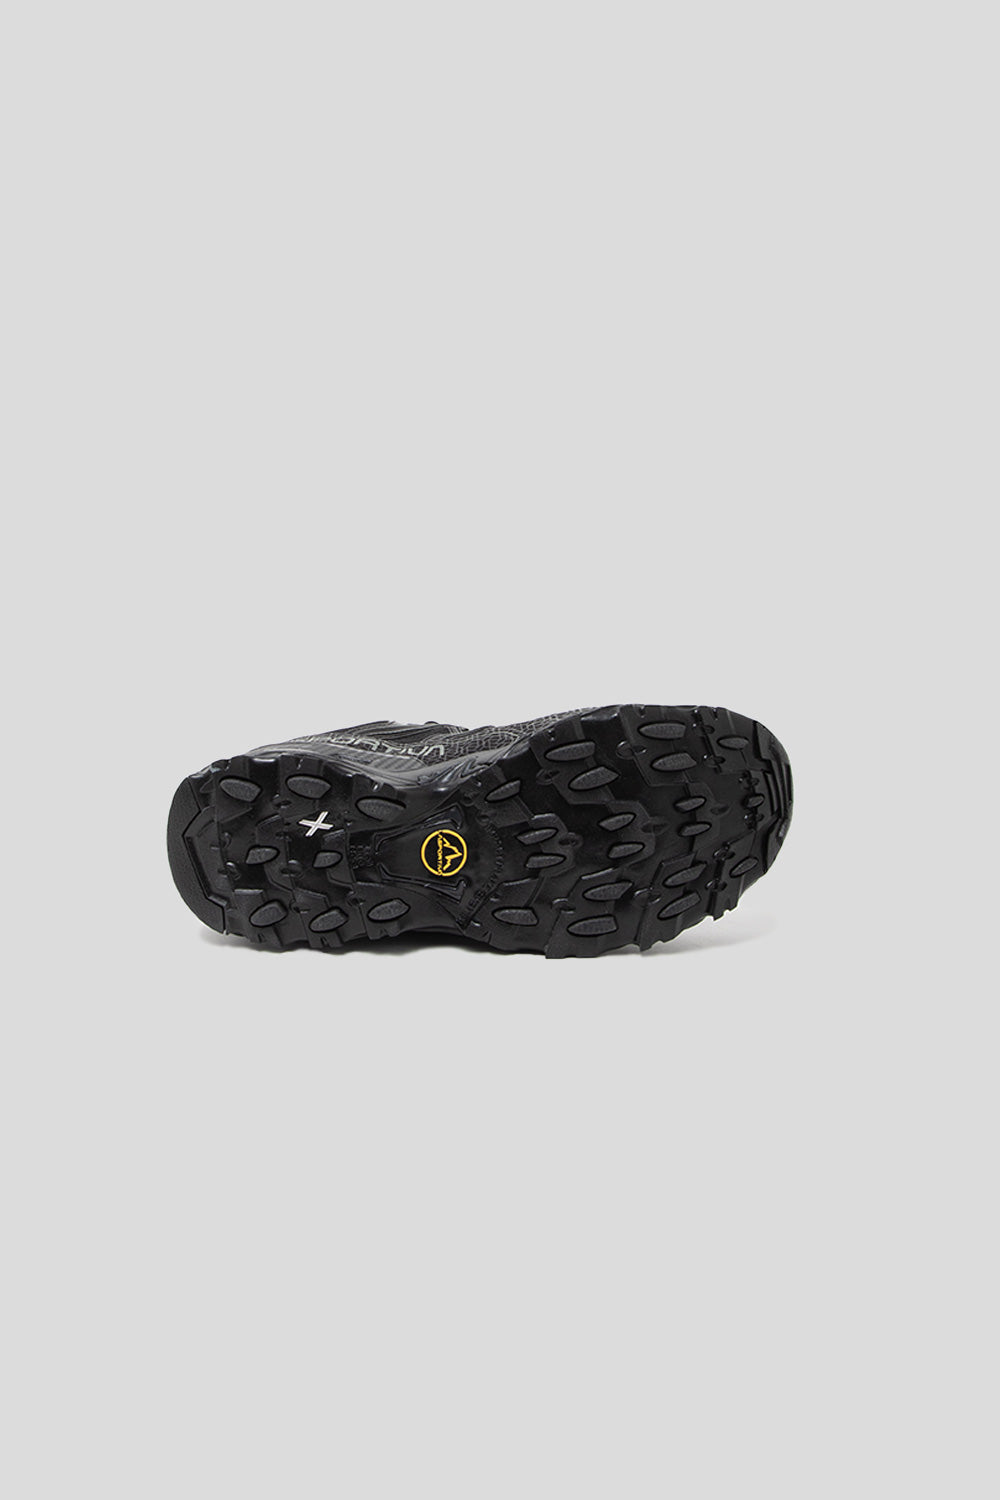 La Sportiva Ultra Raptor II GTX Shoe in Black / Clay